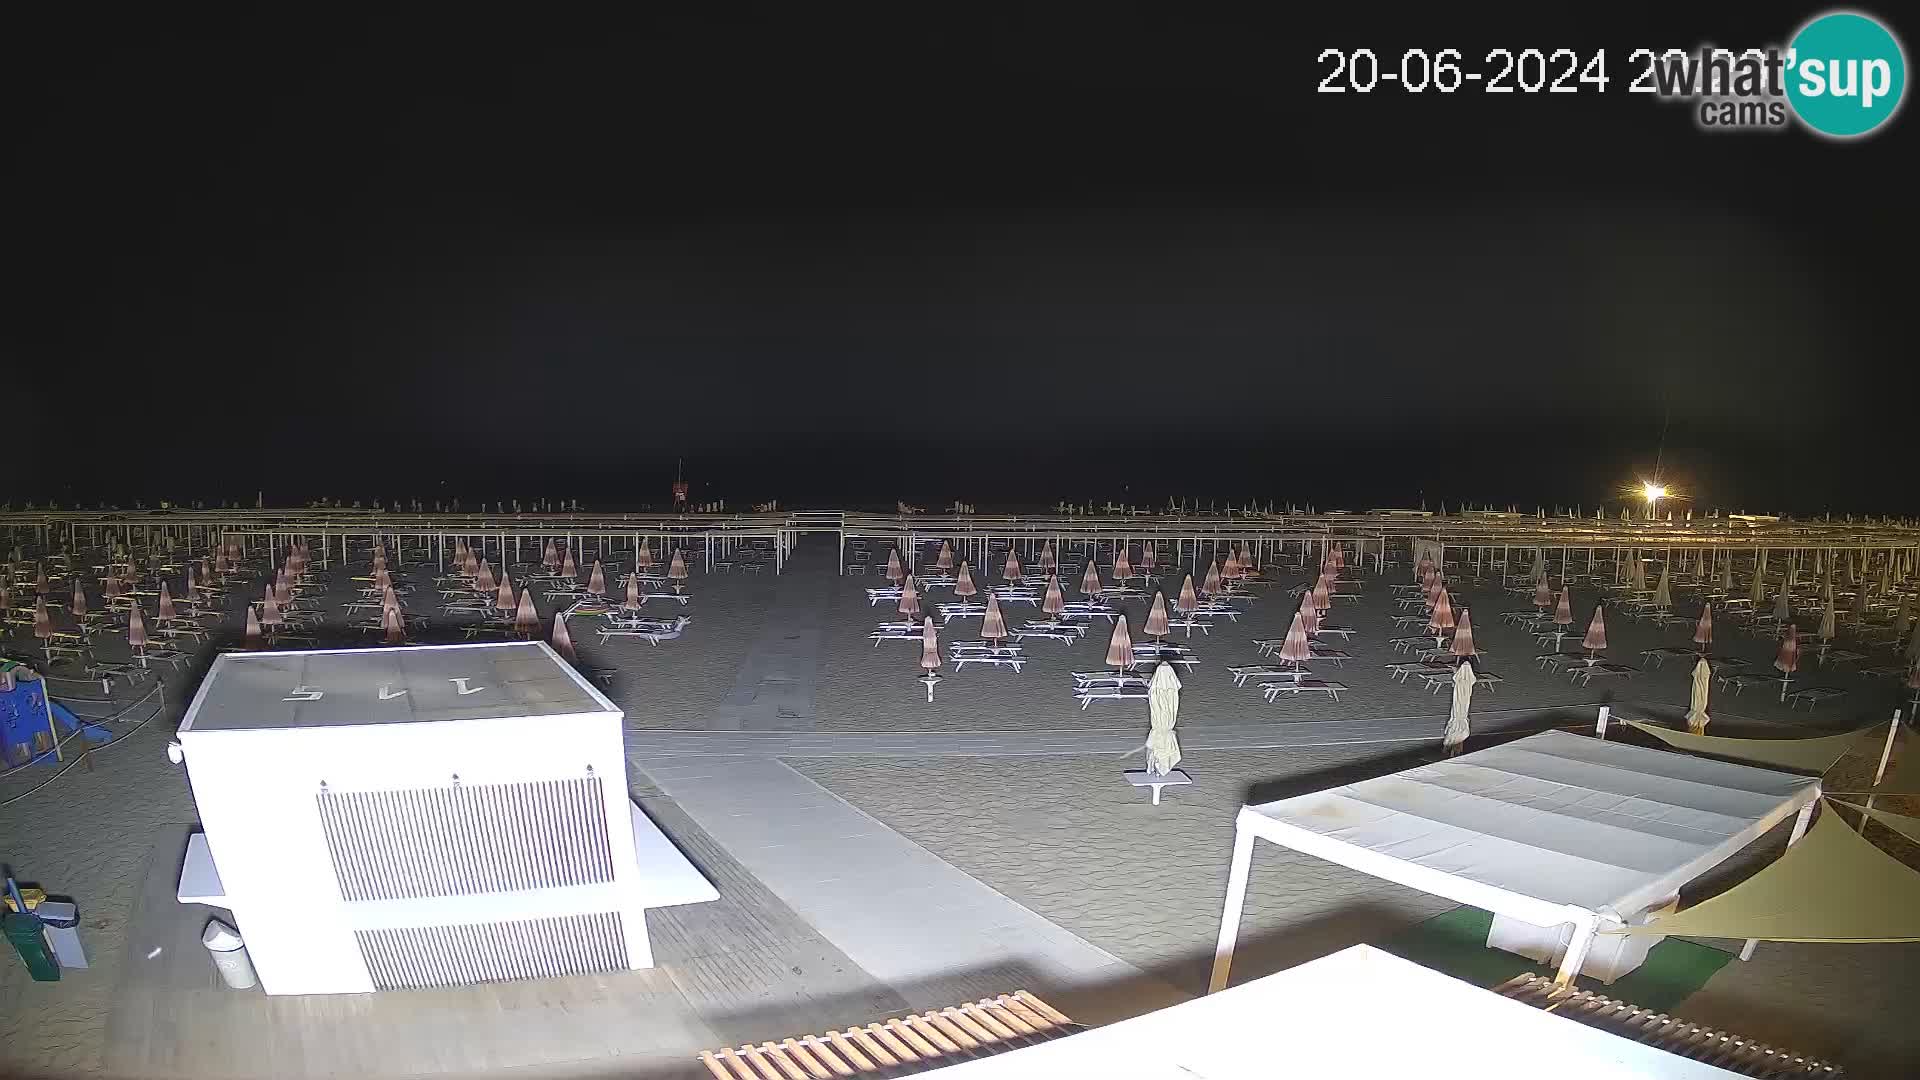 Camera en vivo playa Riccione – Bagni Oreste spiaggia 115 – Italia